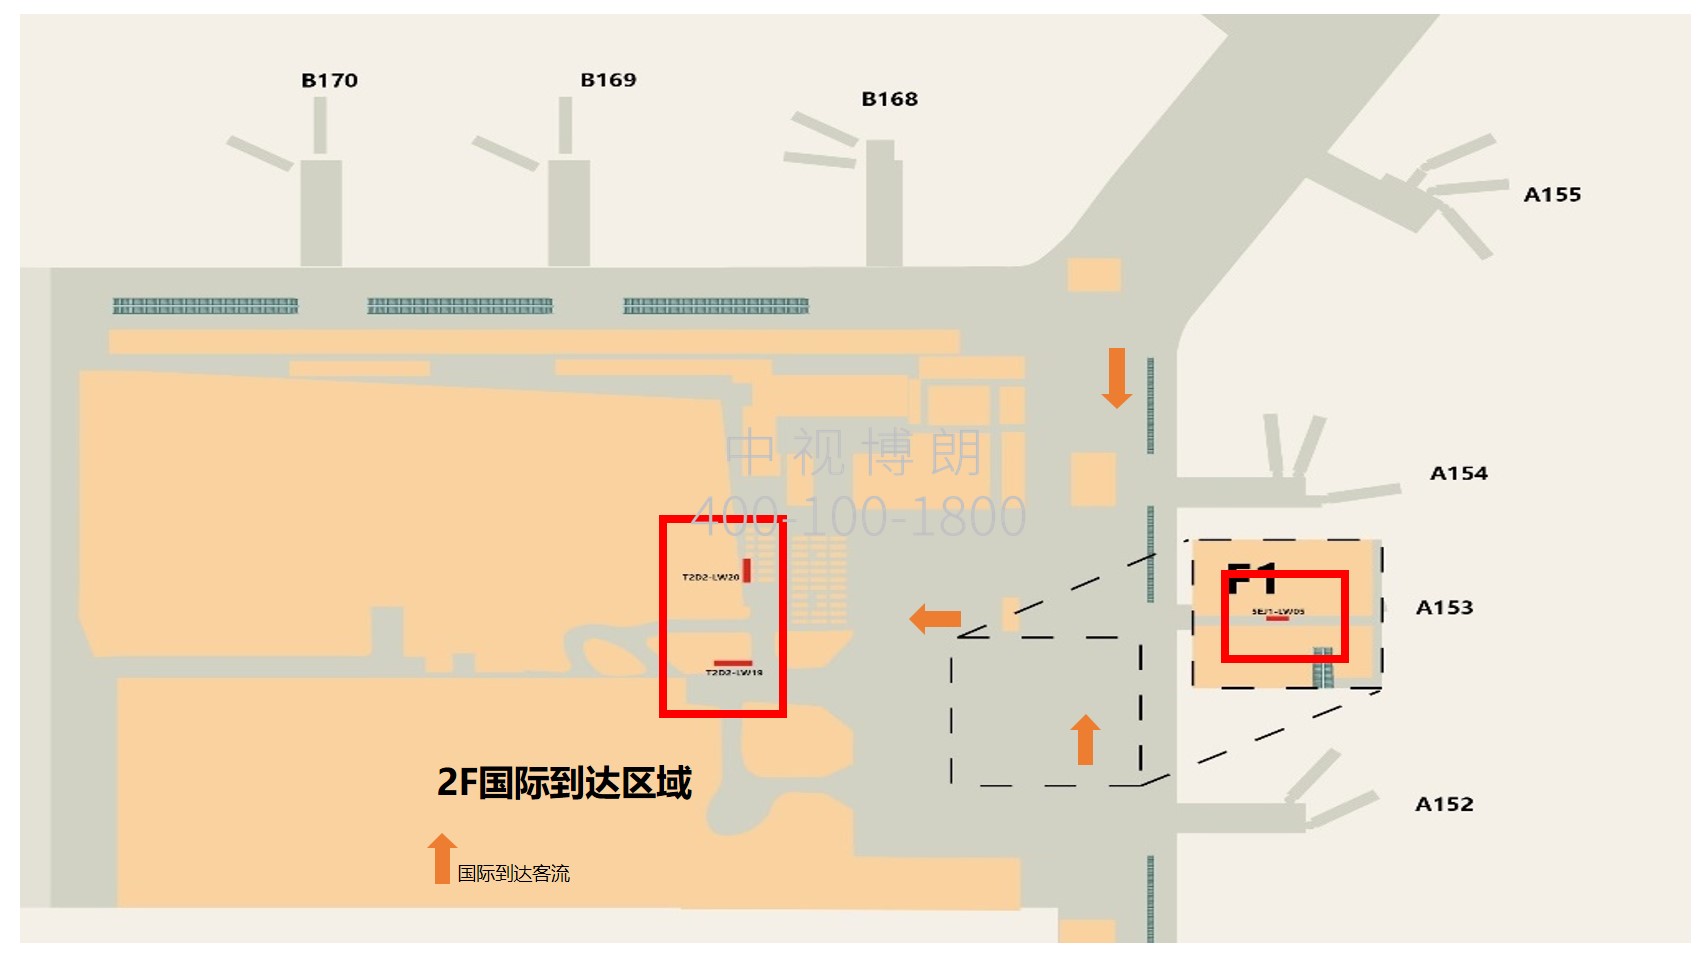 广州机场广告-T2国际到达海关后方灯箱套装2点位图